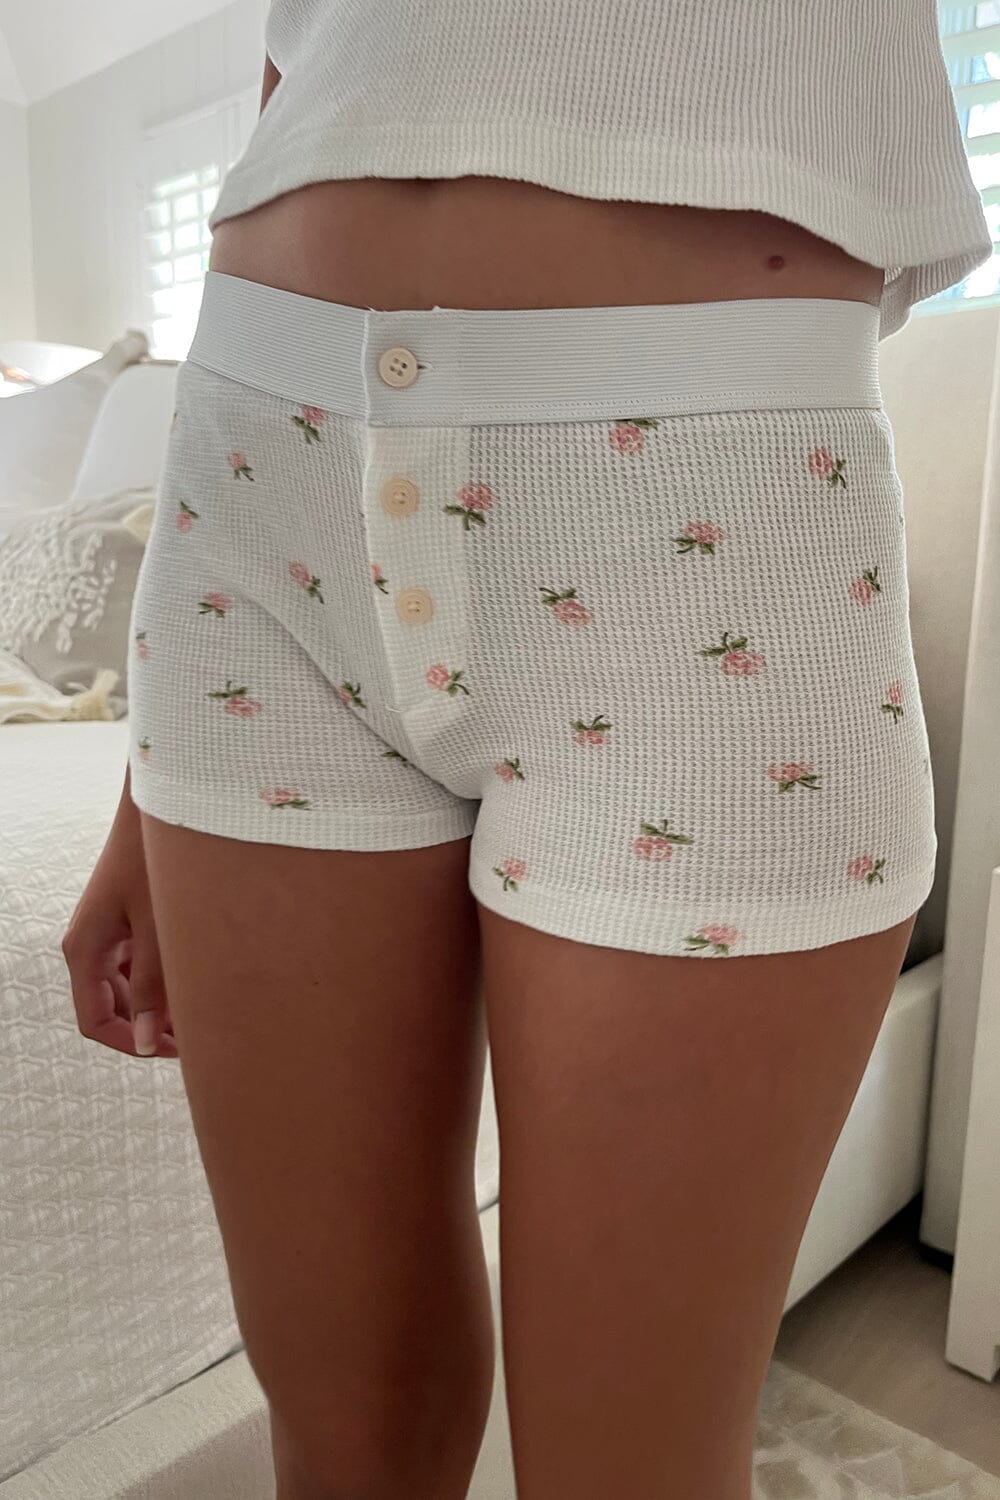 Brandy Melville Boy Short Underwear/Sleep Shorts - $40 - From Genevieve